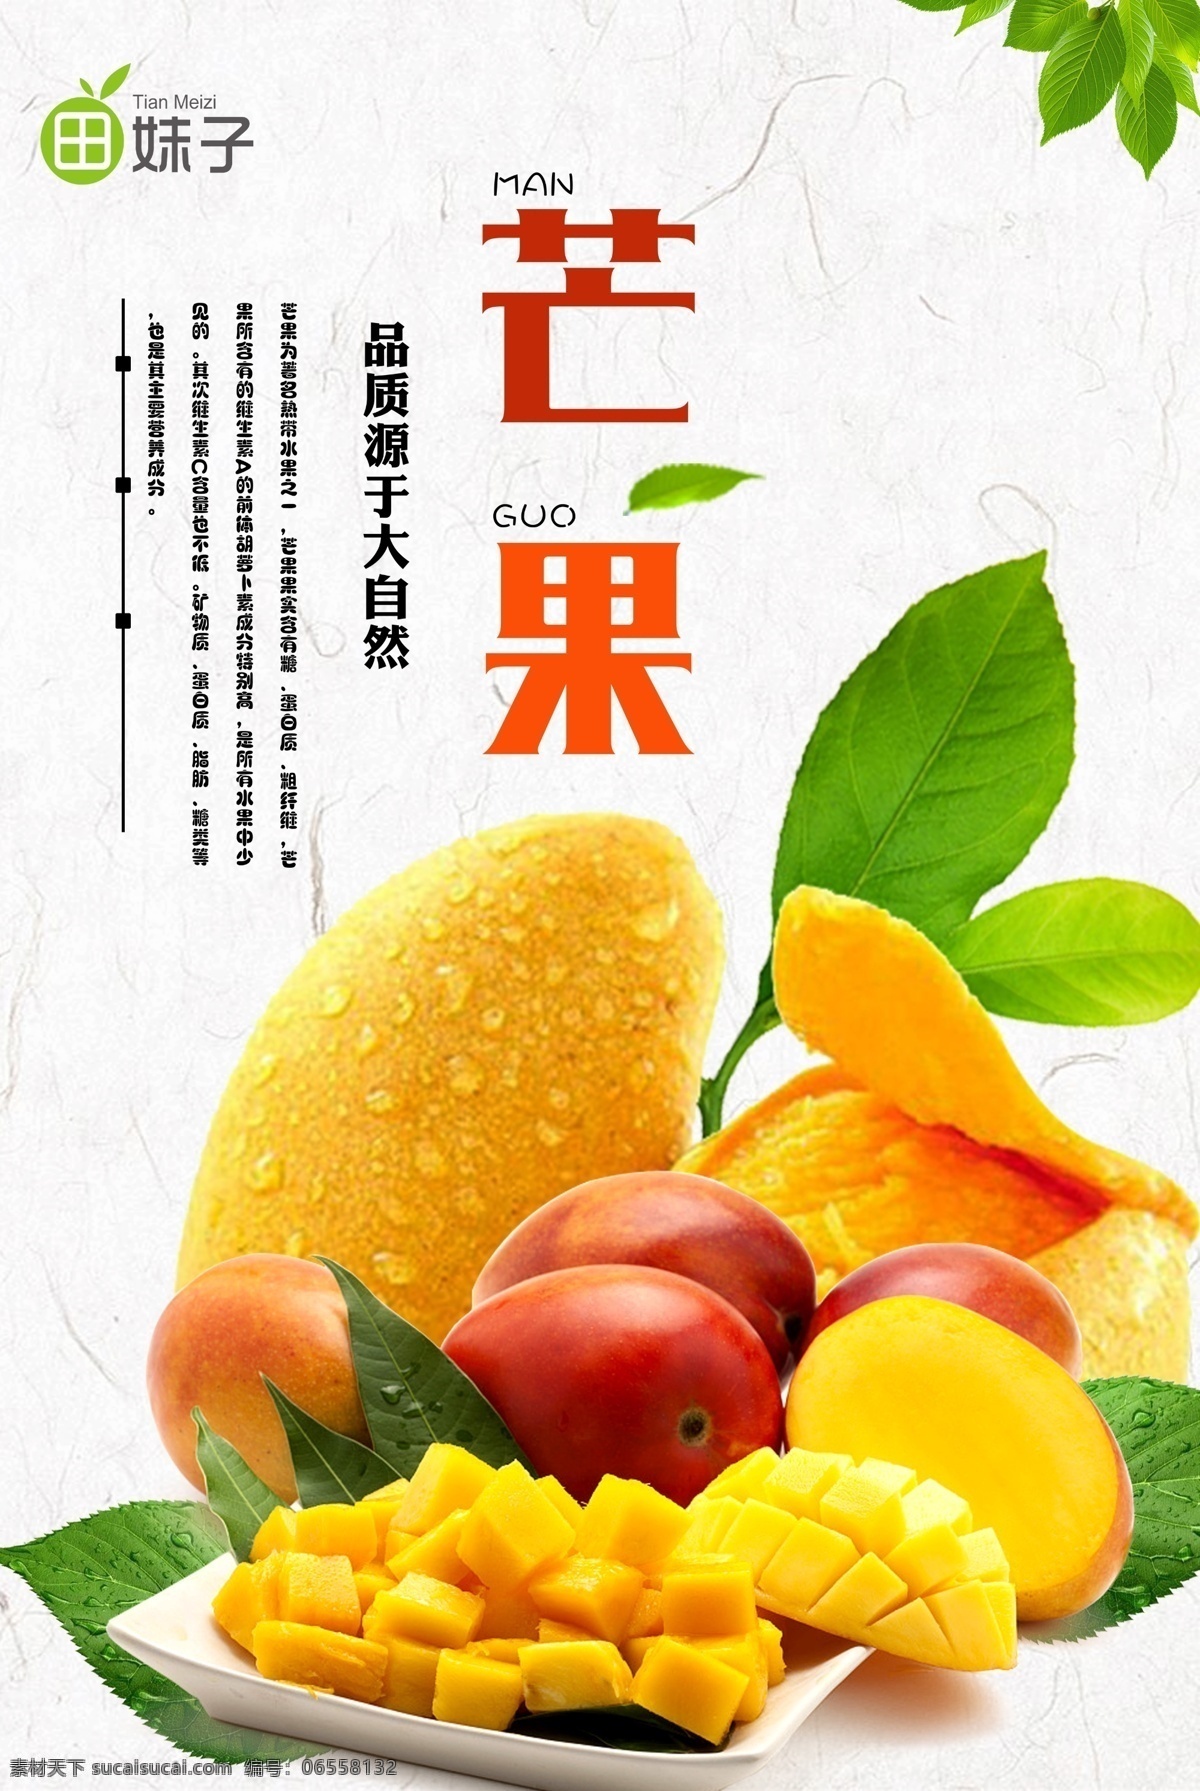 芒果海报设计 新鲜芒果 泰国芒果 水果海报 优质芒果 青芒 大芒果 芒果淘宝图 分层